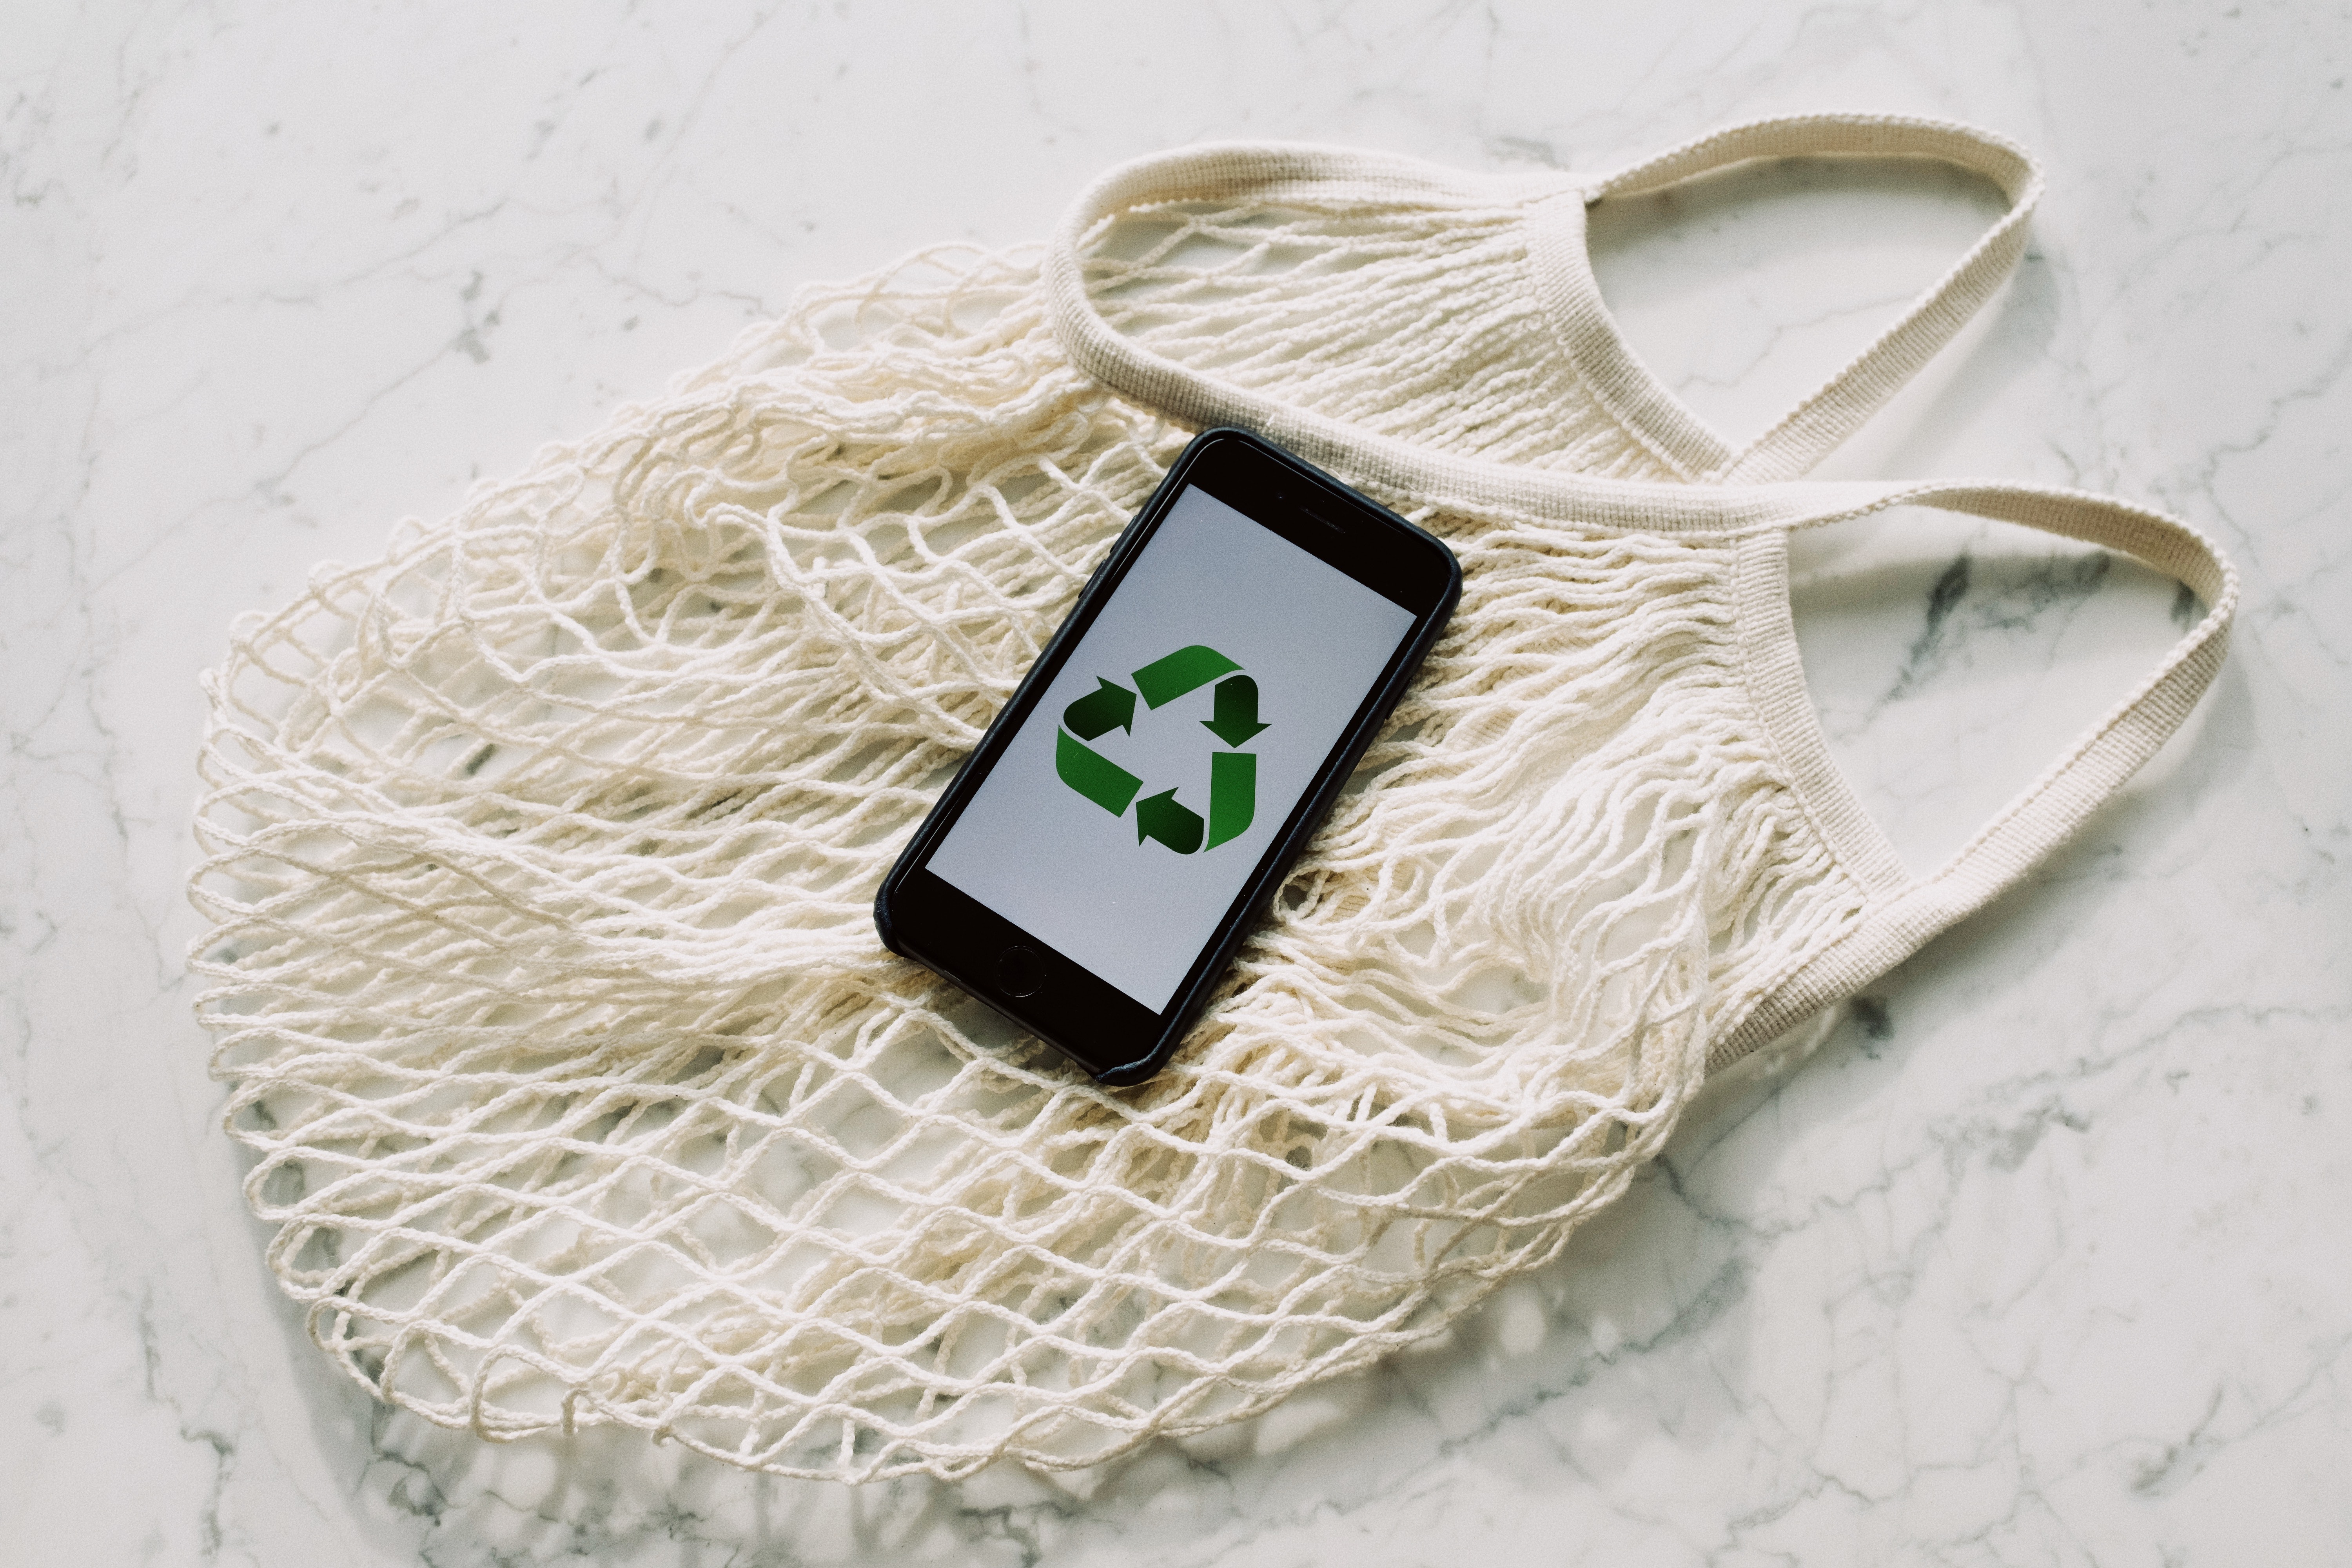 Έτσι μπορείς να ανακυκλώσεις σωστά τις άδειες συσκευασίες από τα προϊόντα ομορφιάς σου